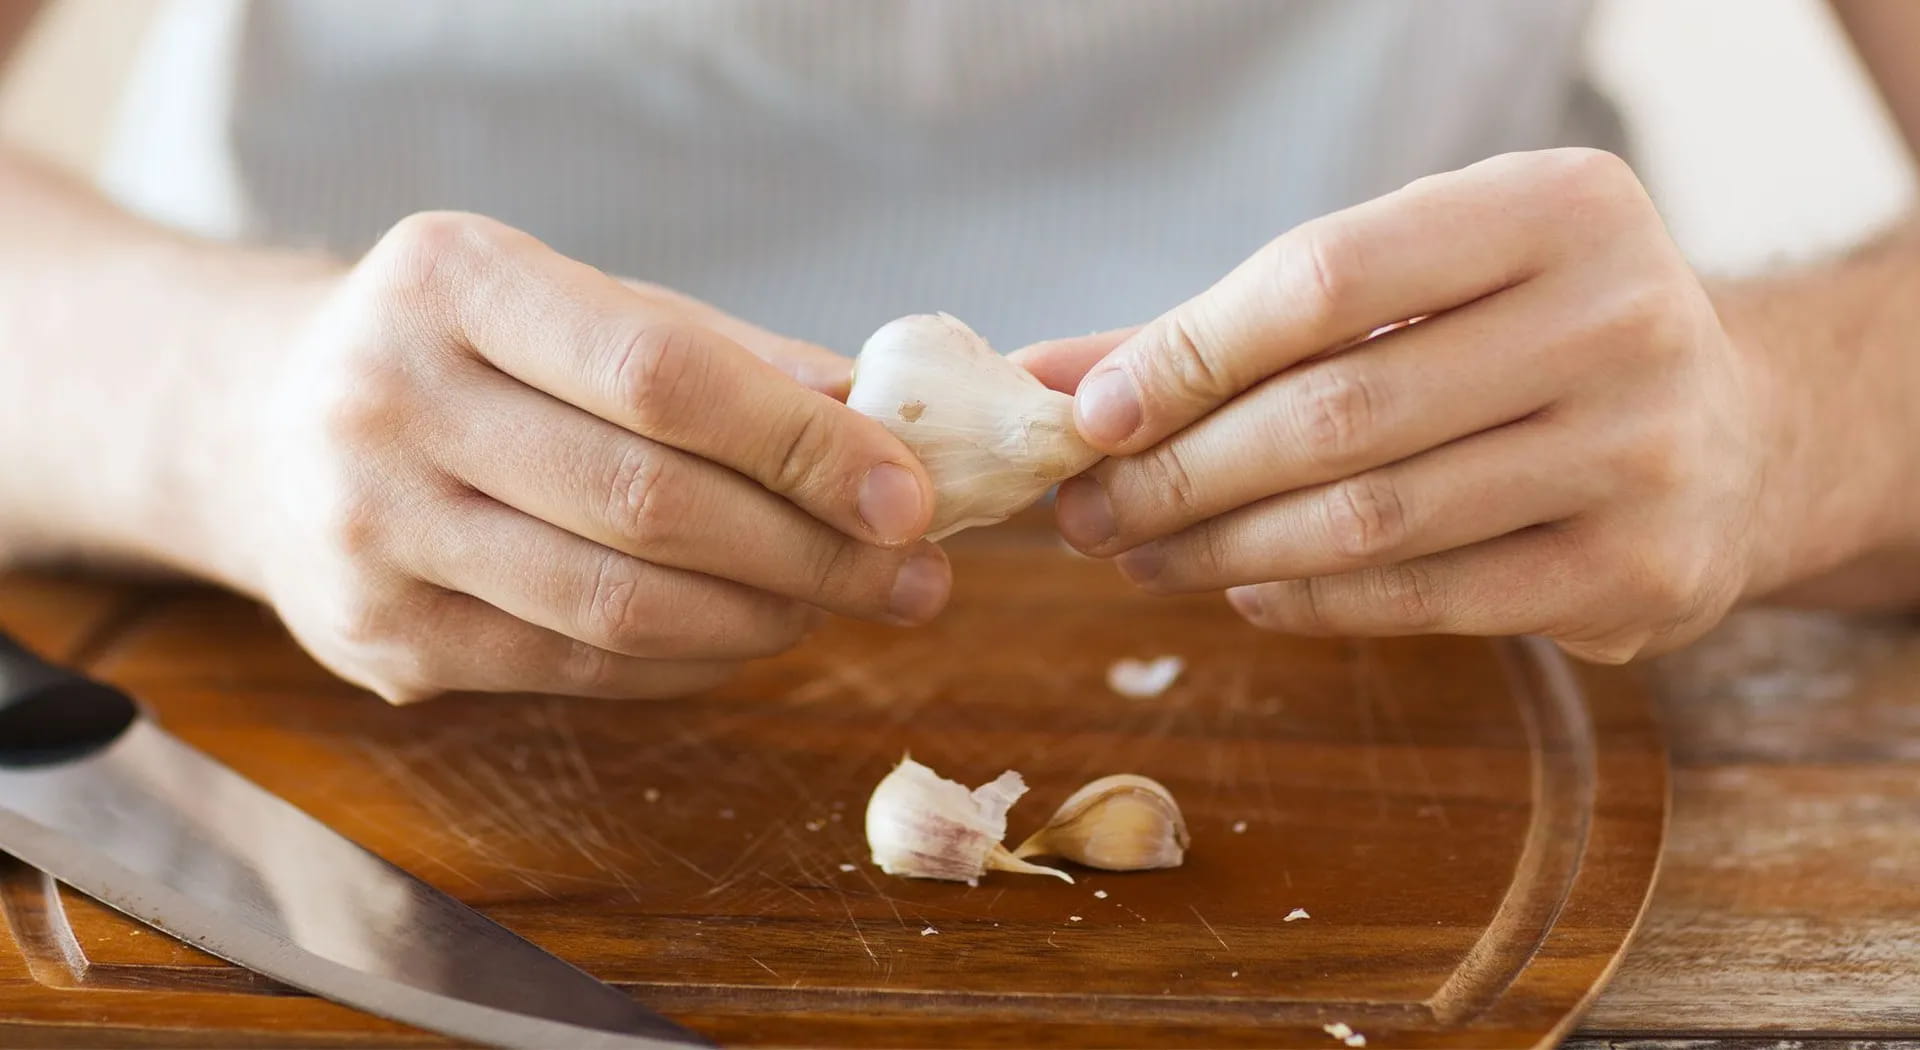 Come togliere l'odore di aglio dalle mani? Ecco il segreto!